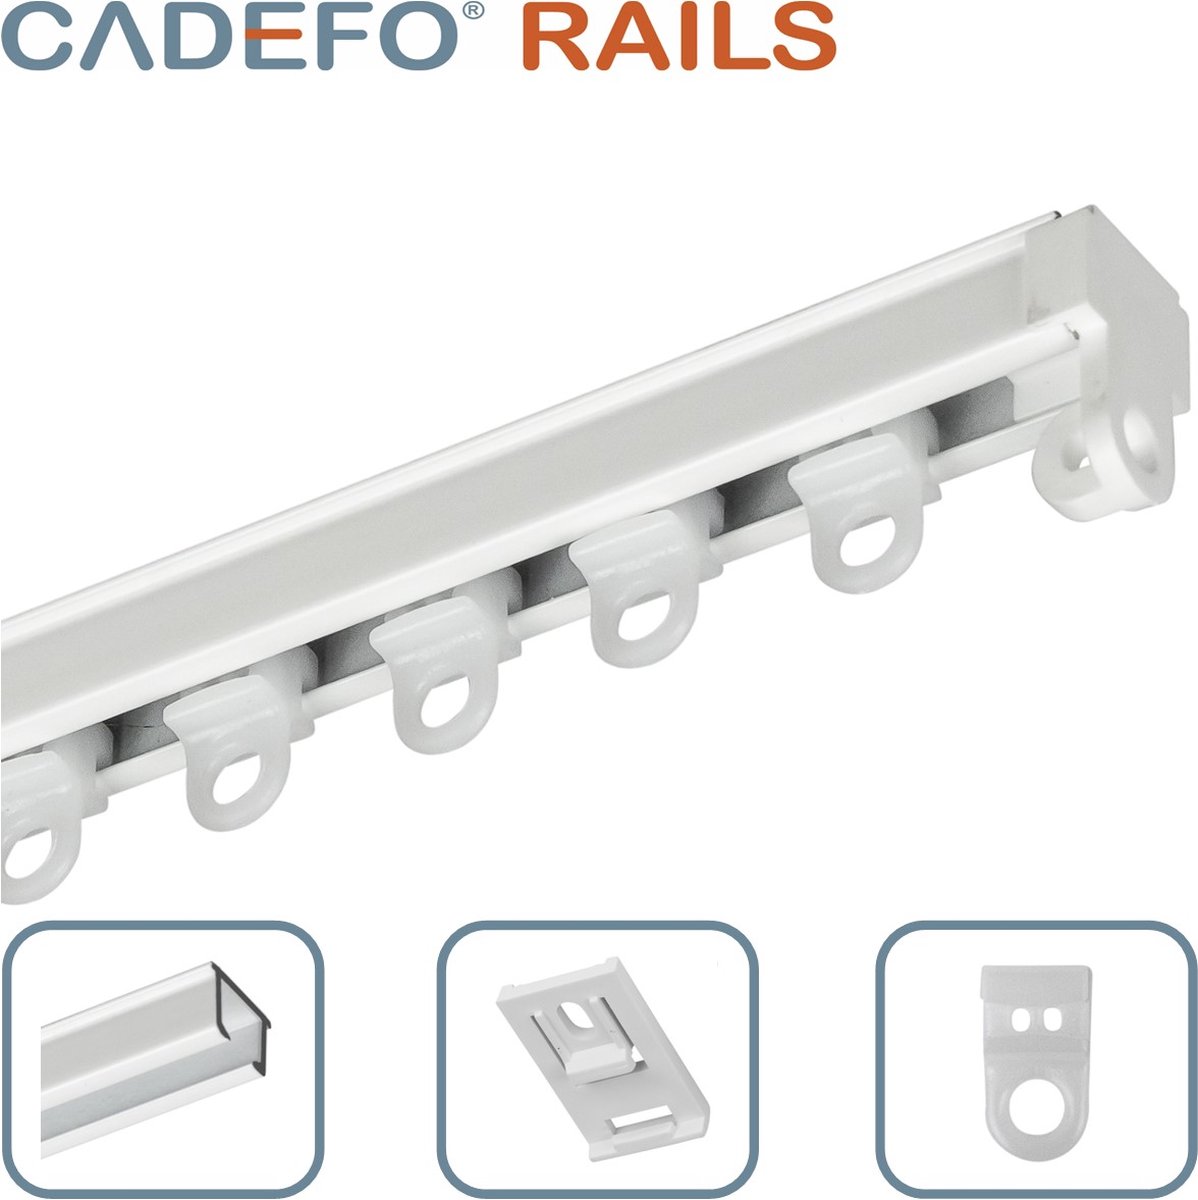 CADEFO RAILS (451 - 500 cm) Gordijnrails - Compleet op maat! - UIT 1 STUK - Leverbaar tot 6 meter - Plafondbevestiging - Lengte 483 cm